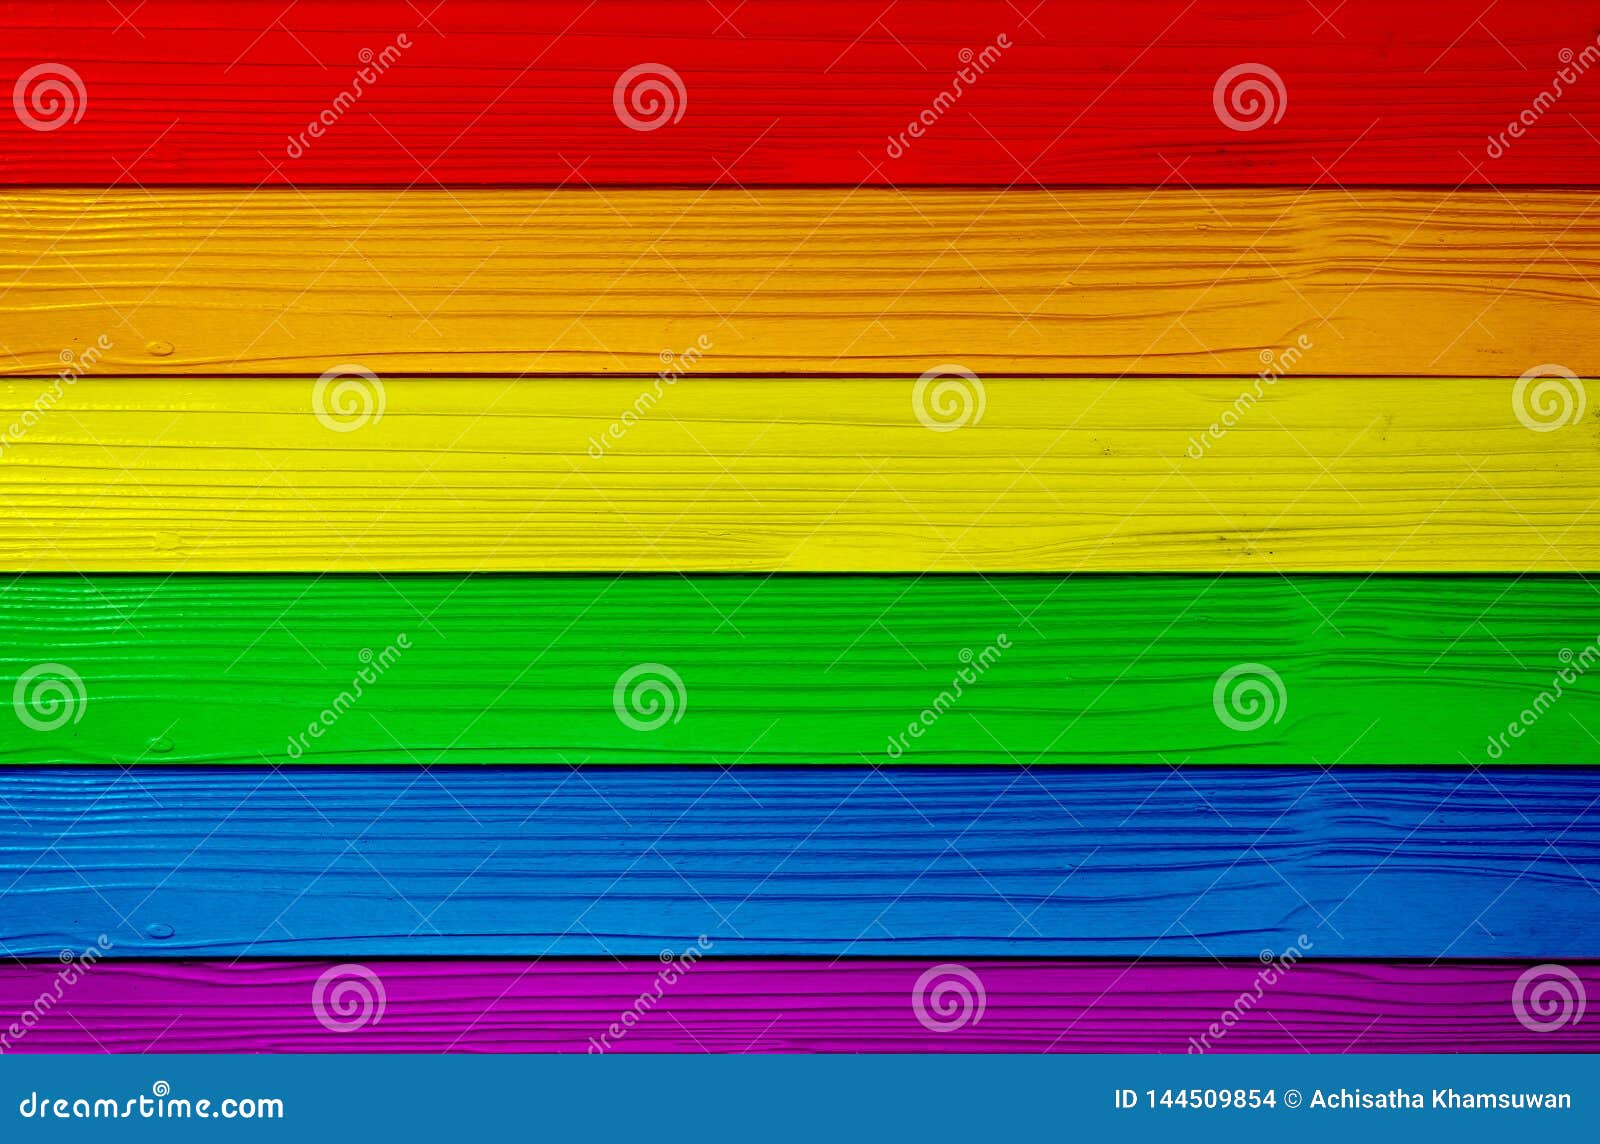 Biểu tượng LGBTQ+ được in trên tường gỗ nền sáng tạo nên một bức tranh độc đáo và ý nghĩa. Bạn có thể tìm hiểu thêm về nội dung và thông điệp mà bức hình này muốn truyền tải thông qua chủ đề đa dạng và bao trùm này.